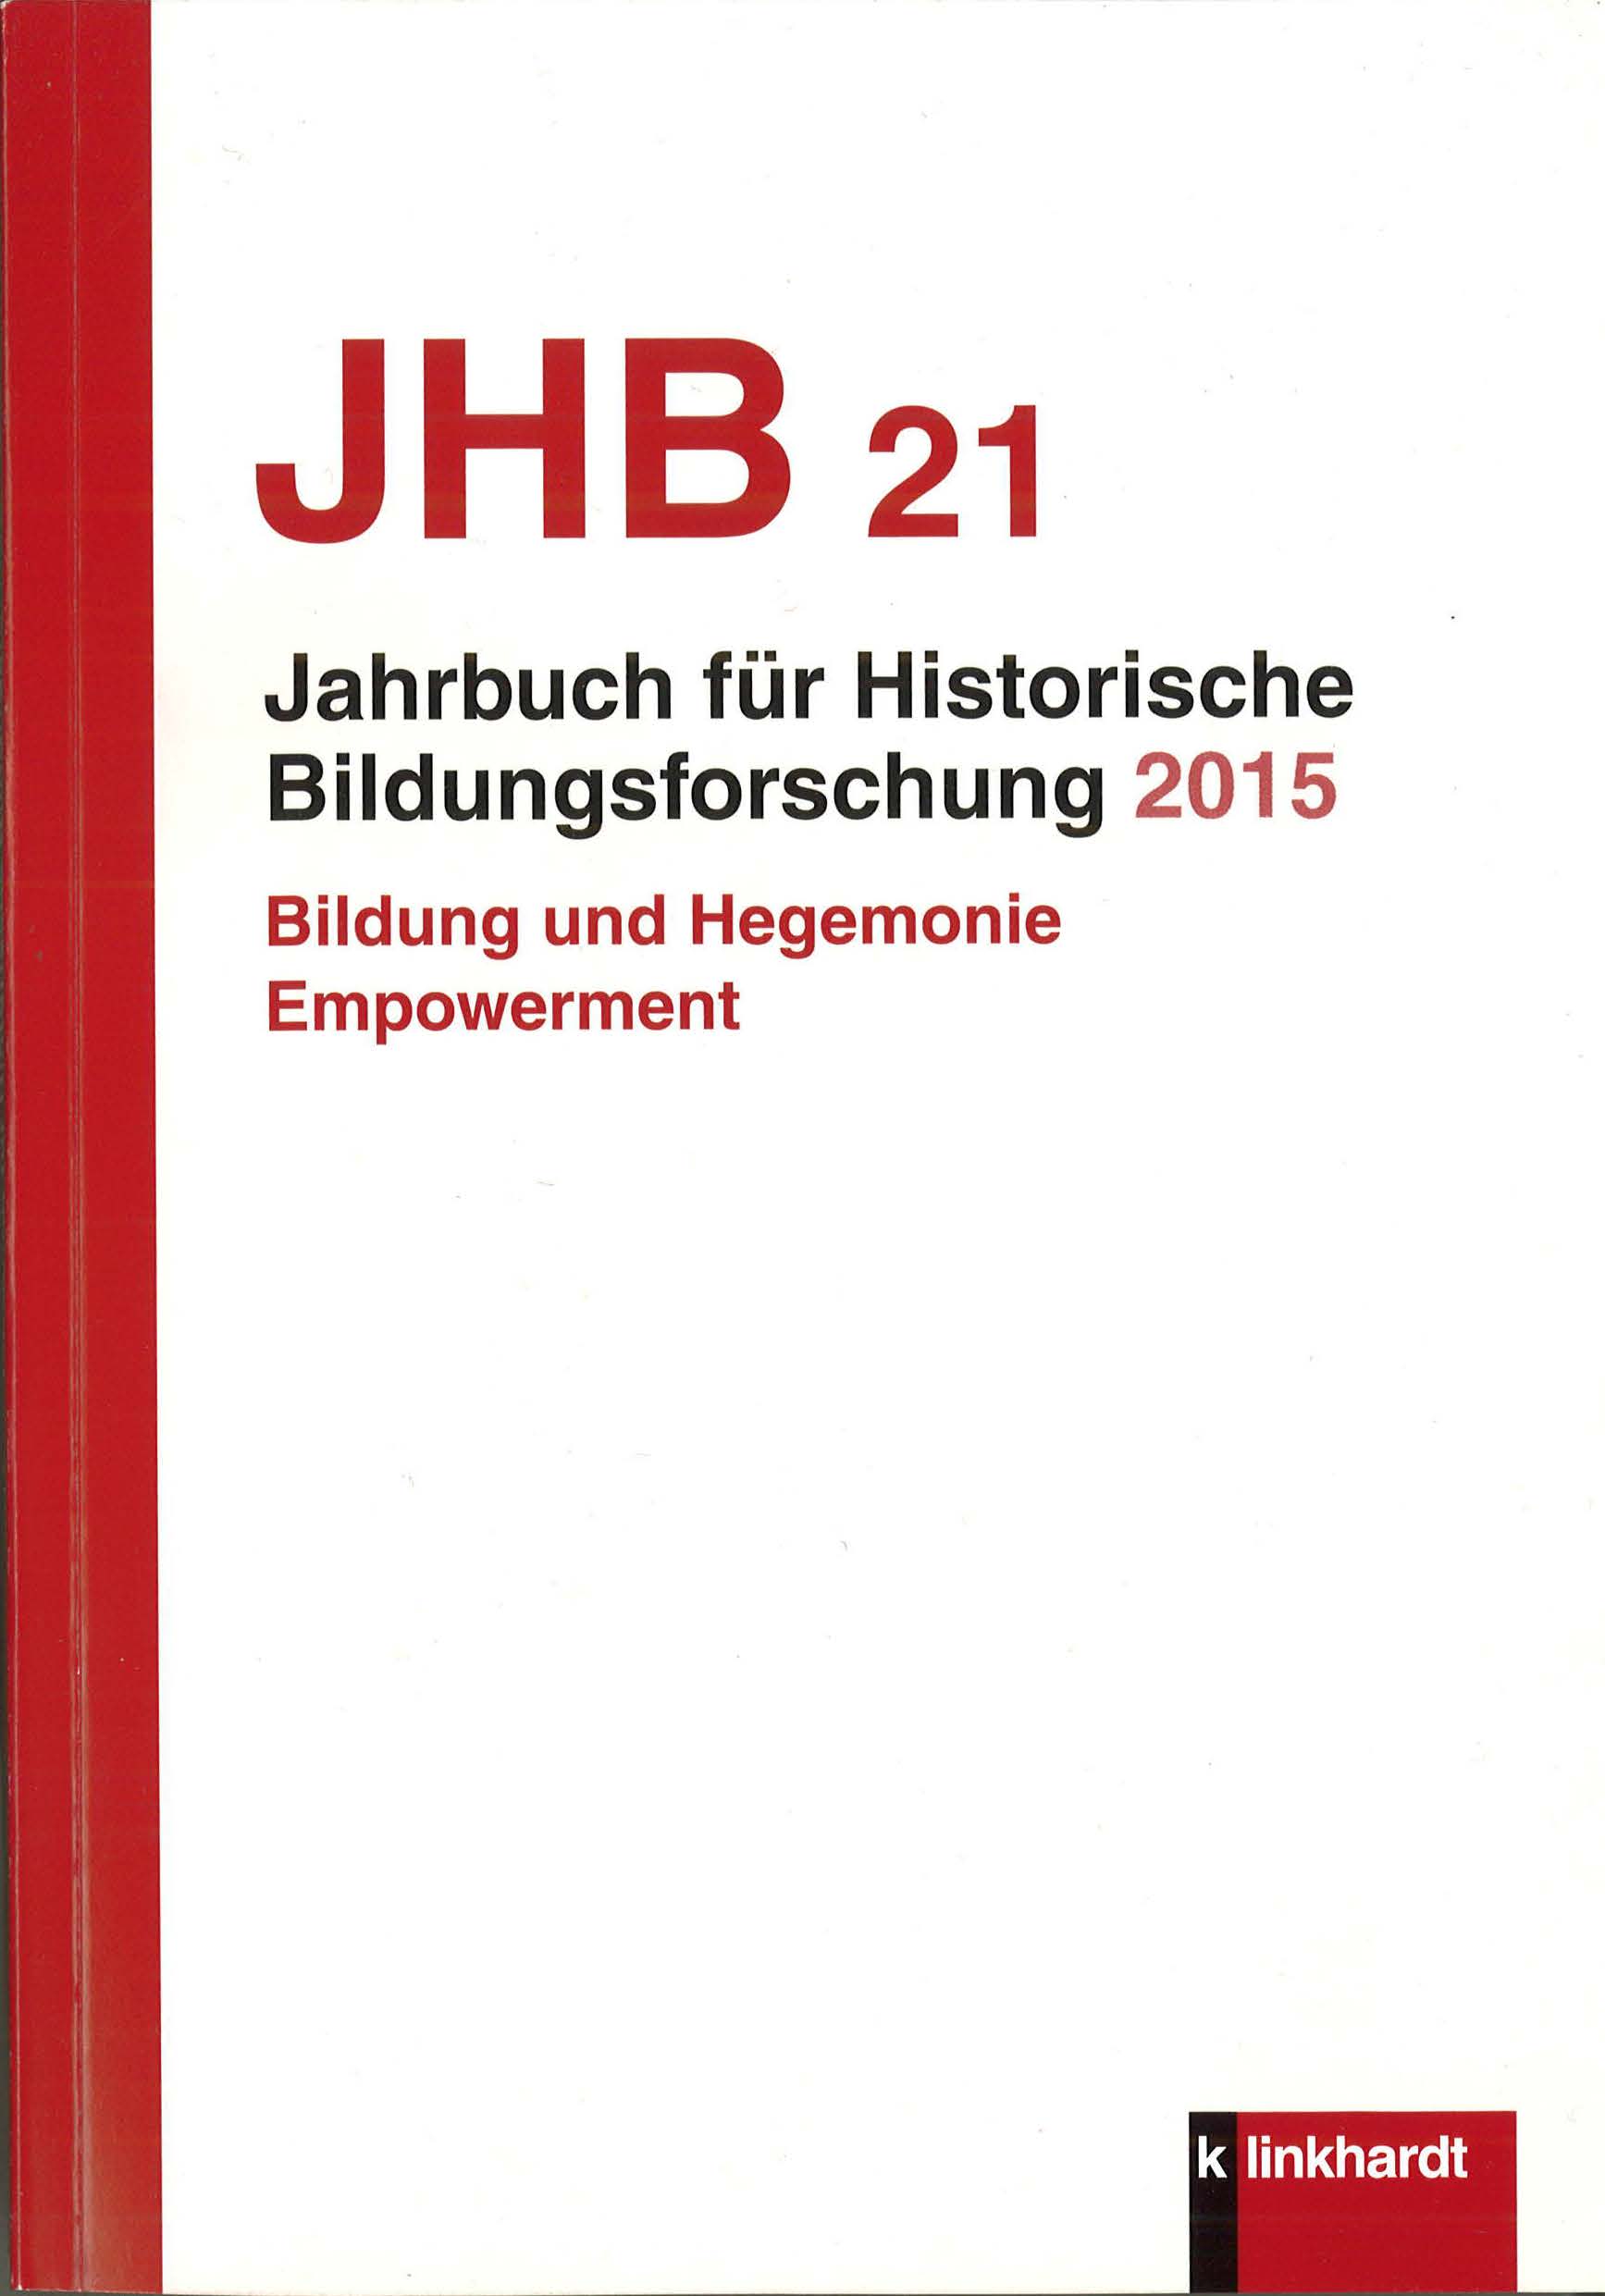 Jahrbuch für Historische Bildungsforschung 2015